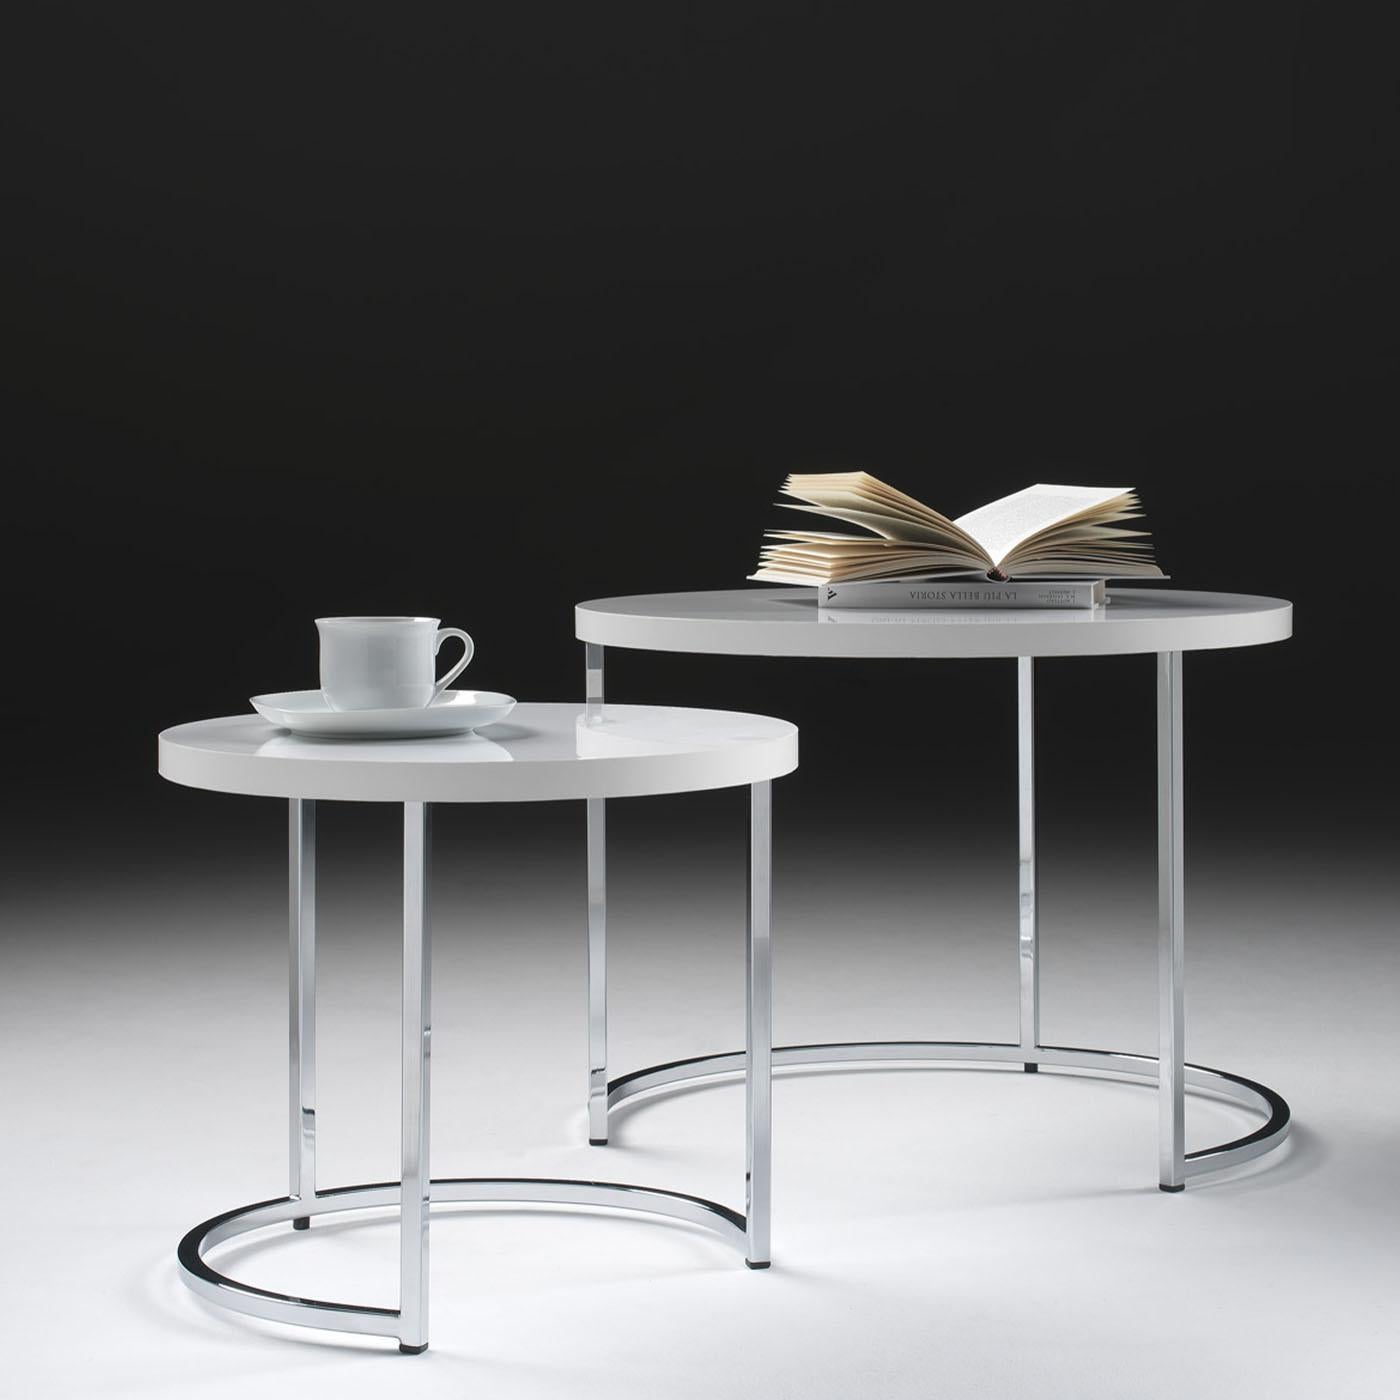 Cet ensemble de deux tables basses conçu par Danilo Bonfanti & Gabriele Moscatelli se caractérise par une structure métallique épurée, d'une sophistication contemporaine. Les plateaux de table présentent des placages en bois de frêne soutenus par